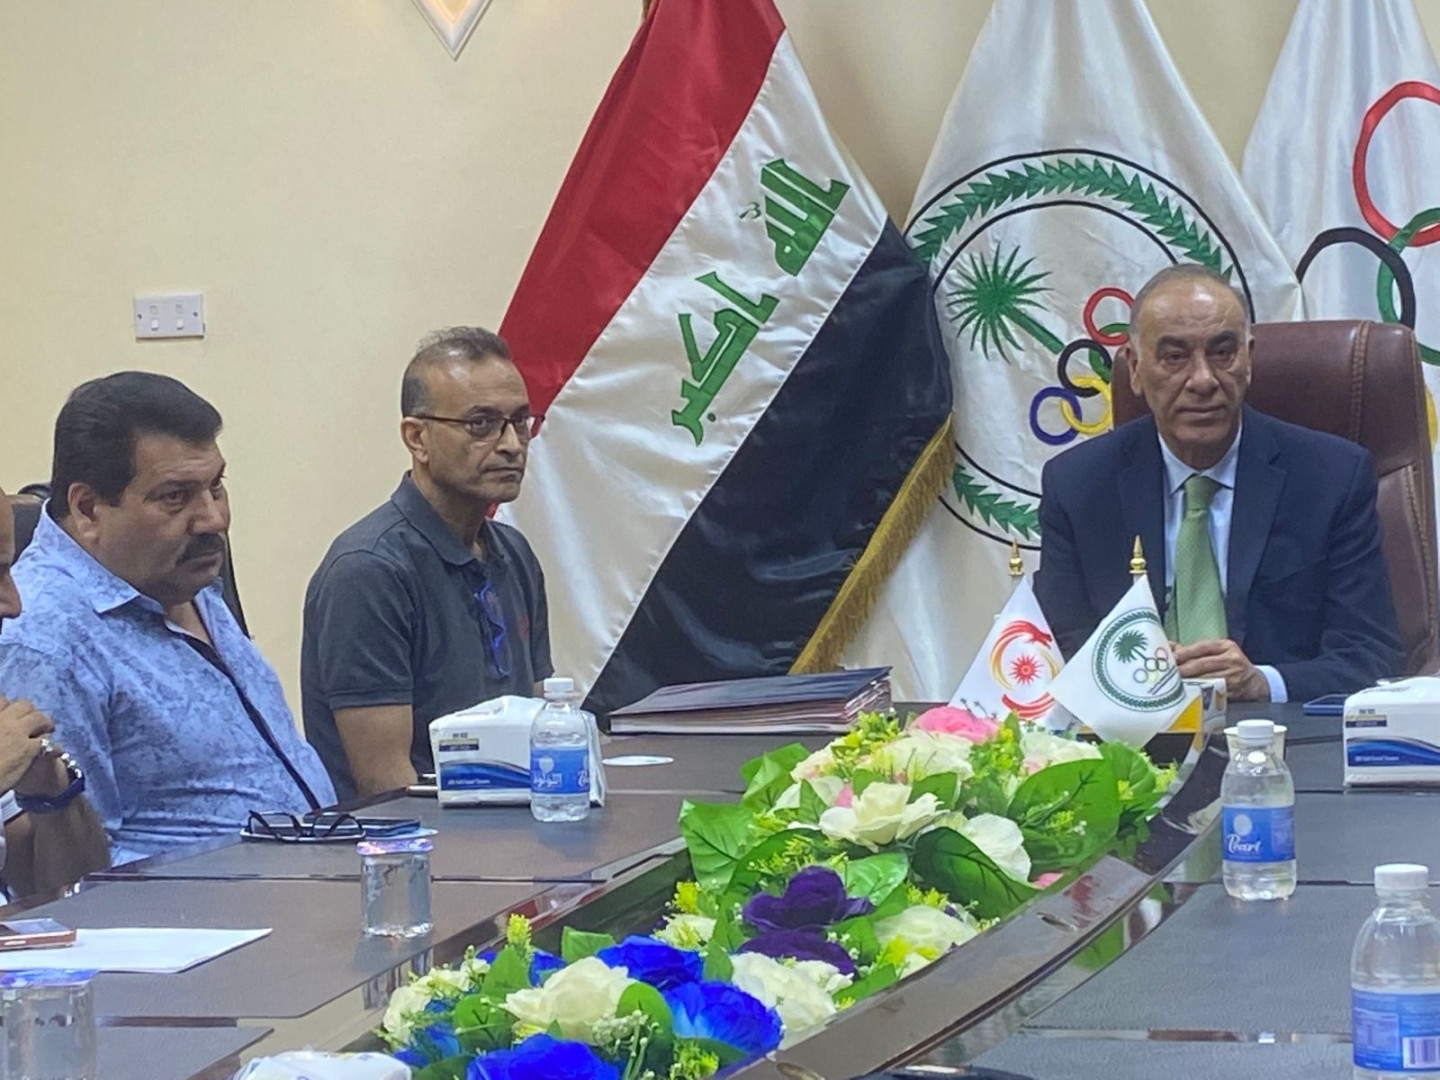 الاولمبية العراقية تحدد يوم 26 أيلول المقبل موعداً لانعقاد الجمعية العامة 